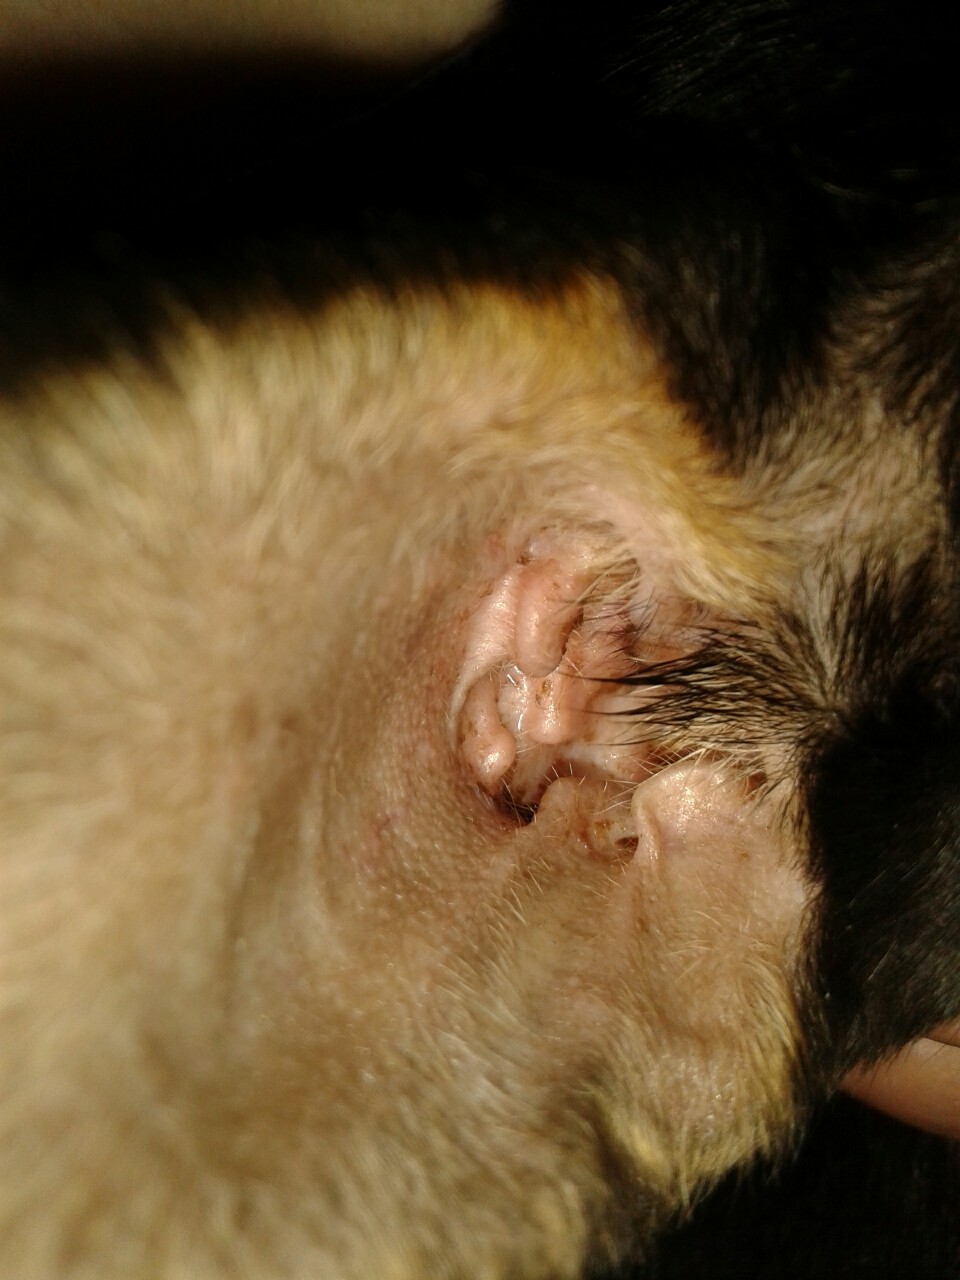 Habe bei meinen Chihuahua welpen was im Ohr gesehen sind das Milben? (Hund)